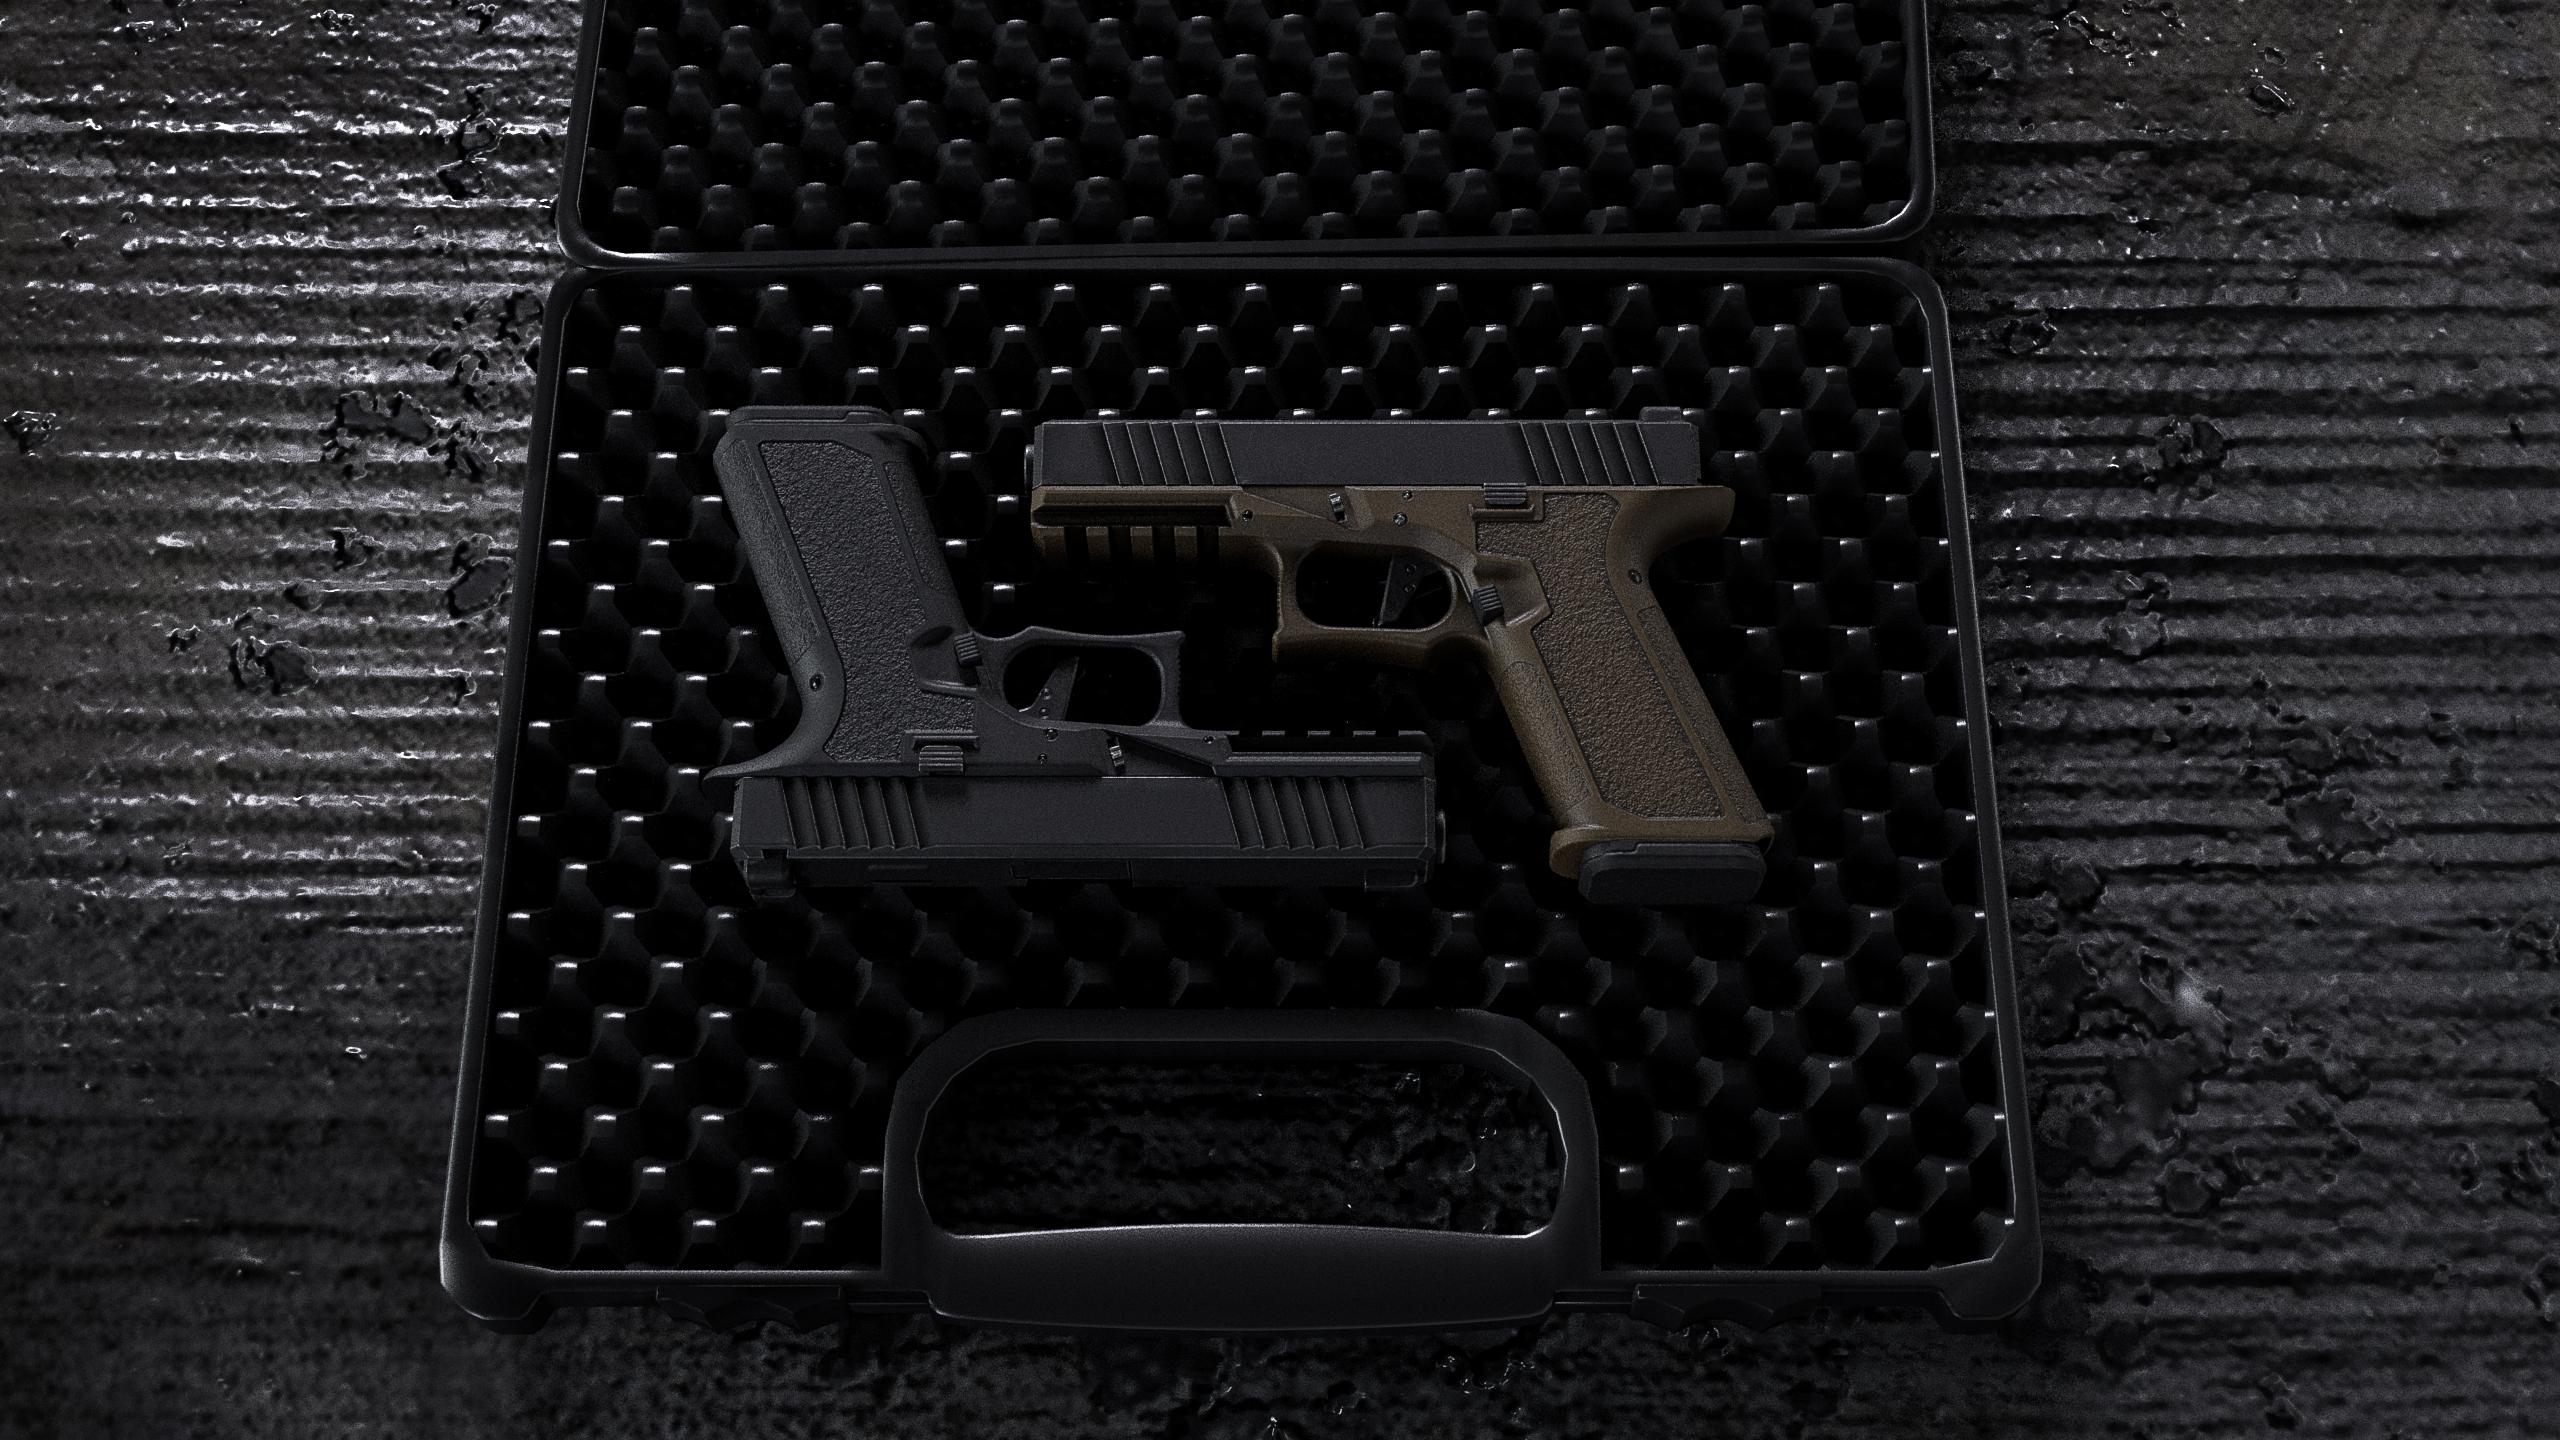 Glock 17 Gen 5 - GTA5-Mods.com